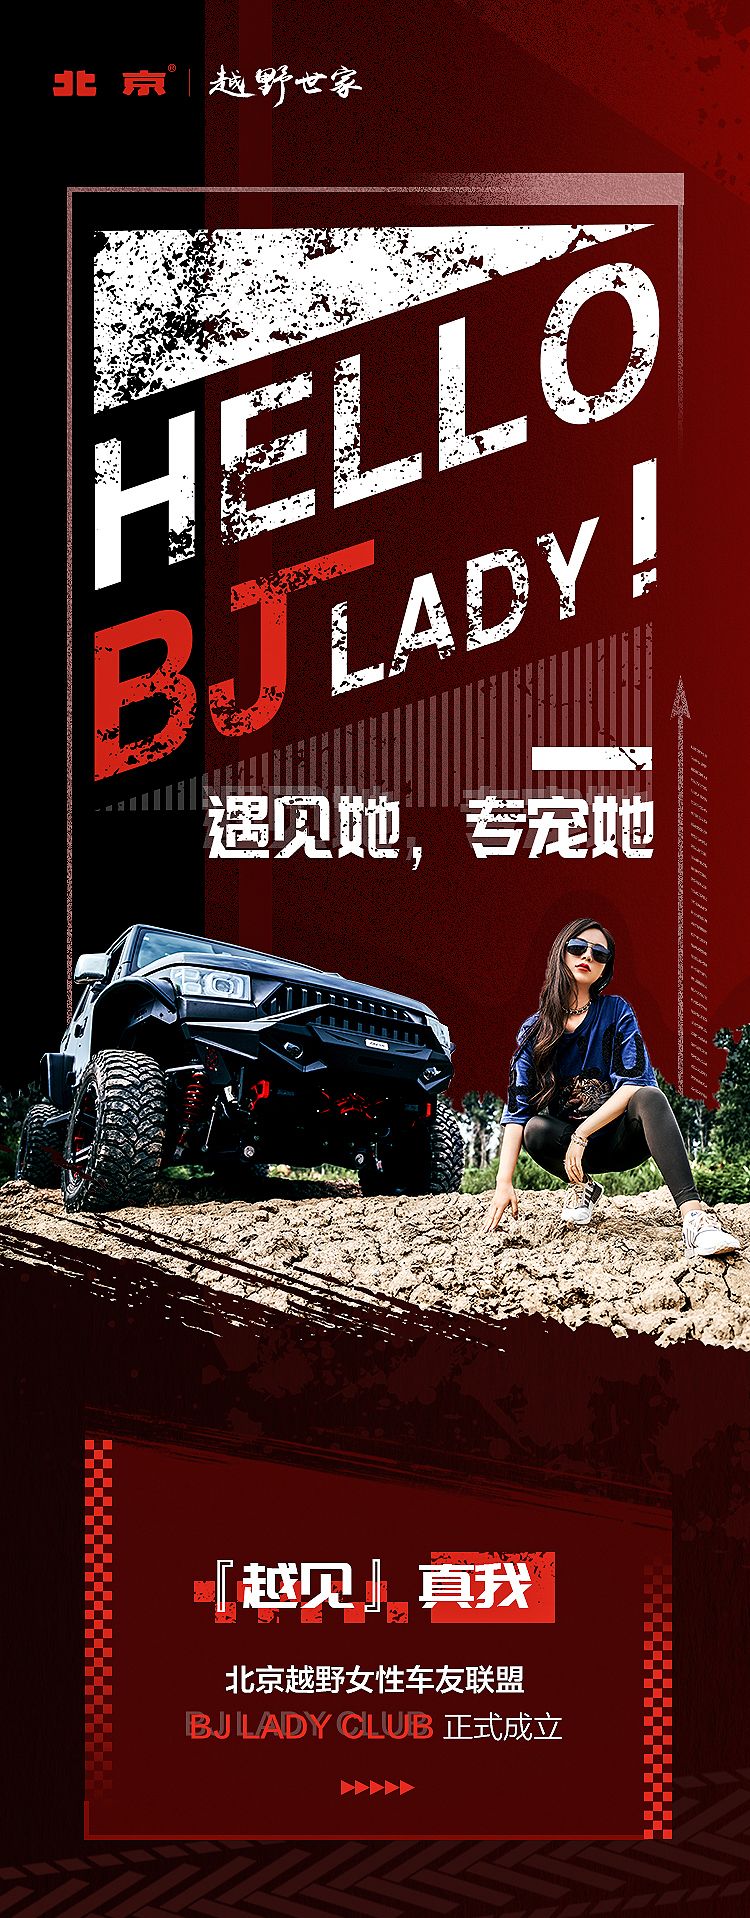 为女性车友提供专属服务，北京越野打造品牌首次女性车友联盟